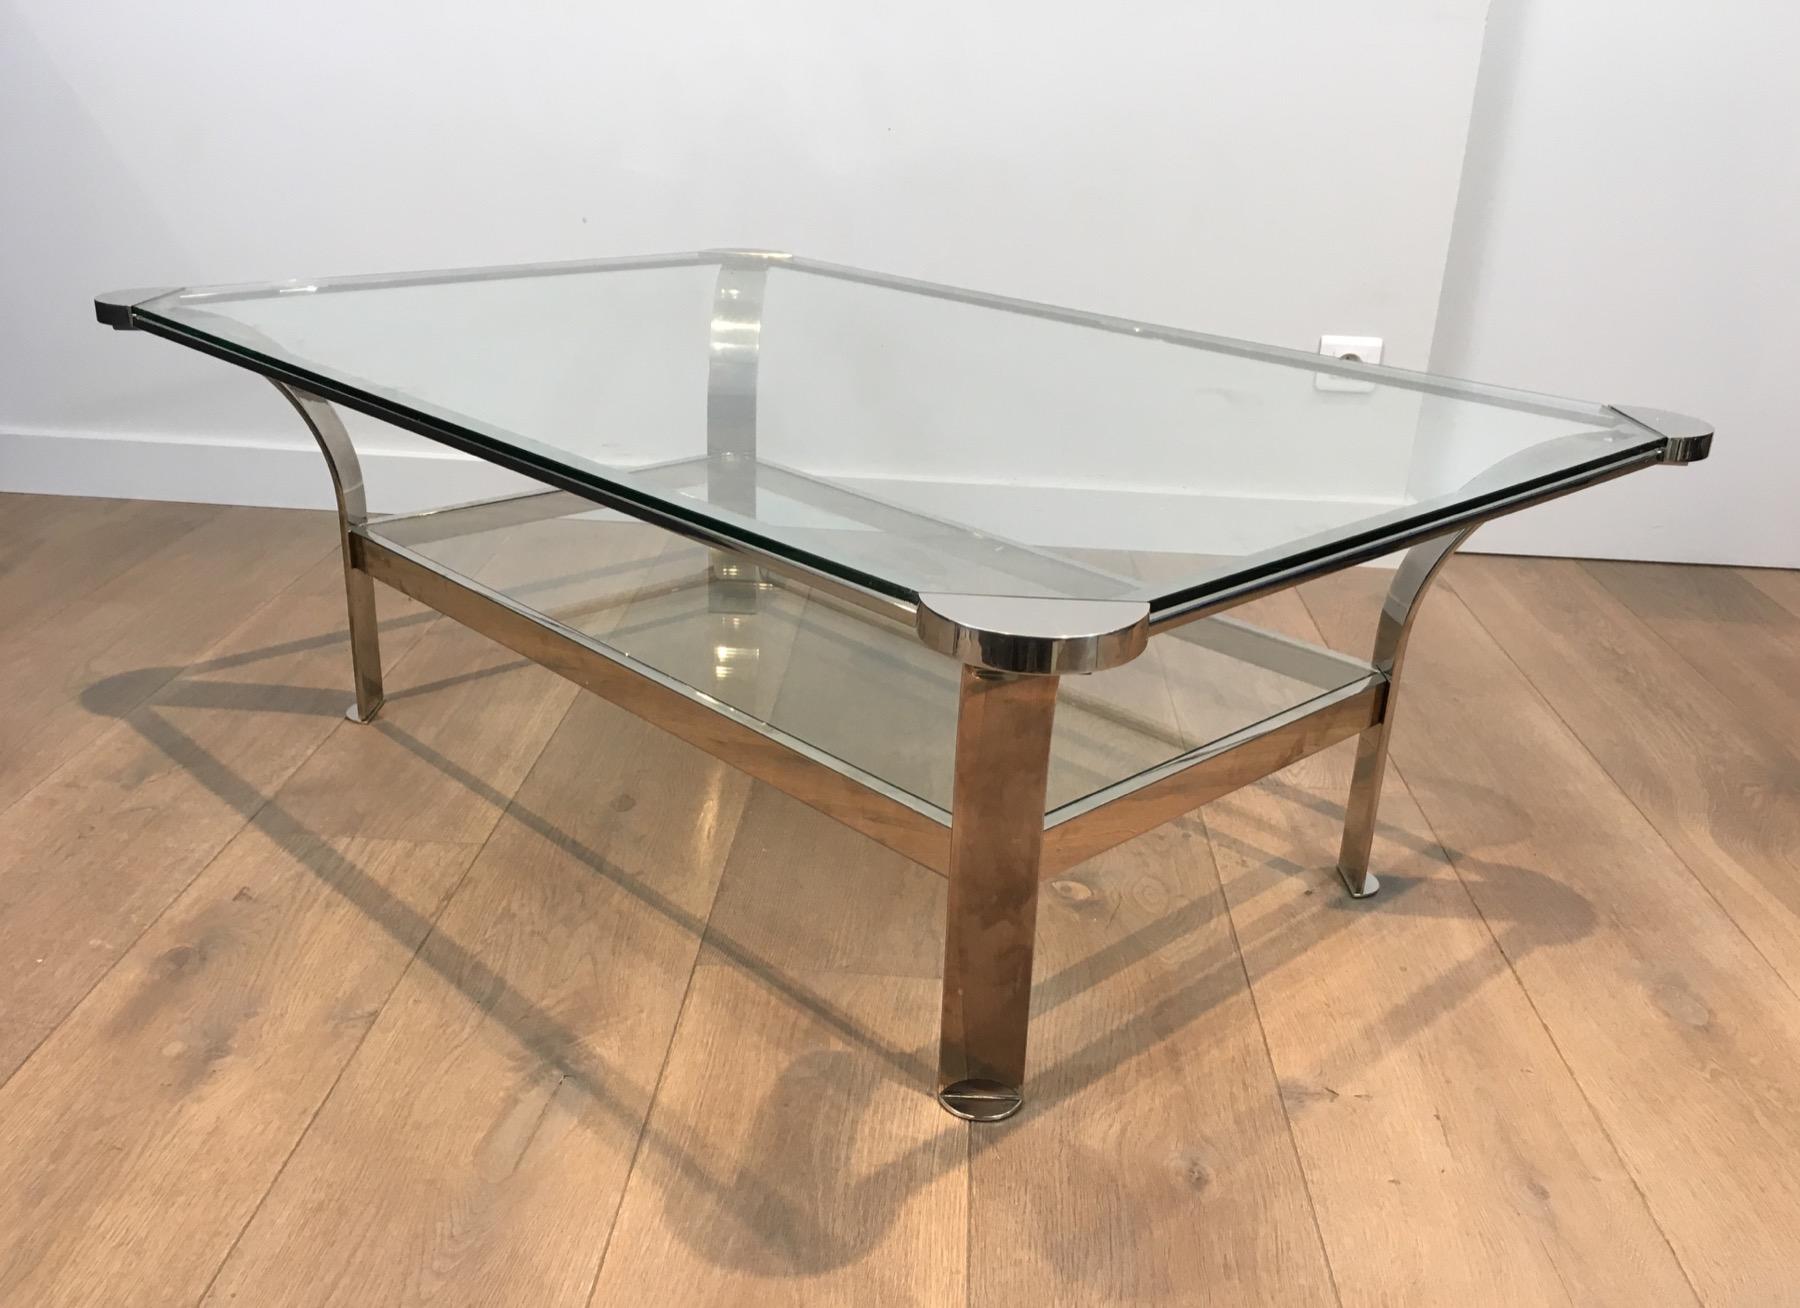 Cette très belle table basse design est fabriquée en chrome avec une tablette en verre. Il s'agit d'un ouvrage français. Très beau design et belle qualité. Circa 1970.